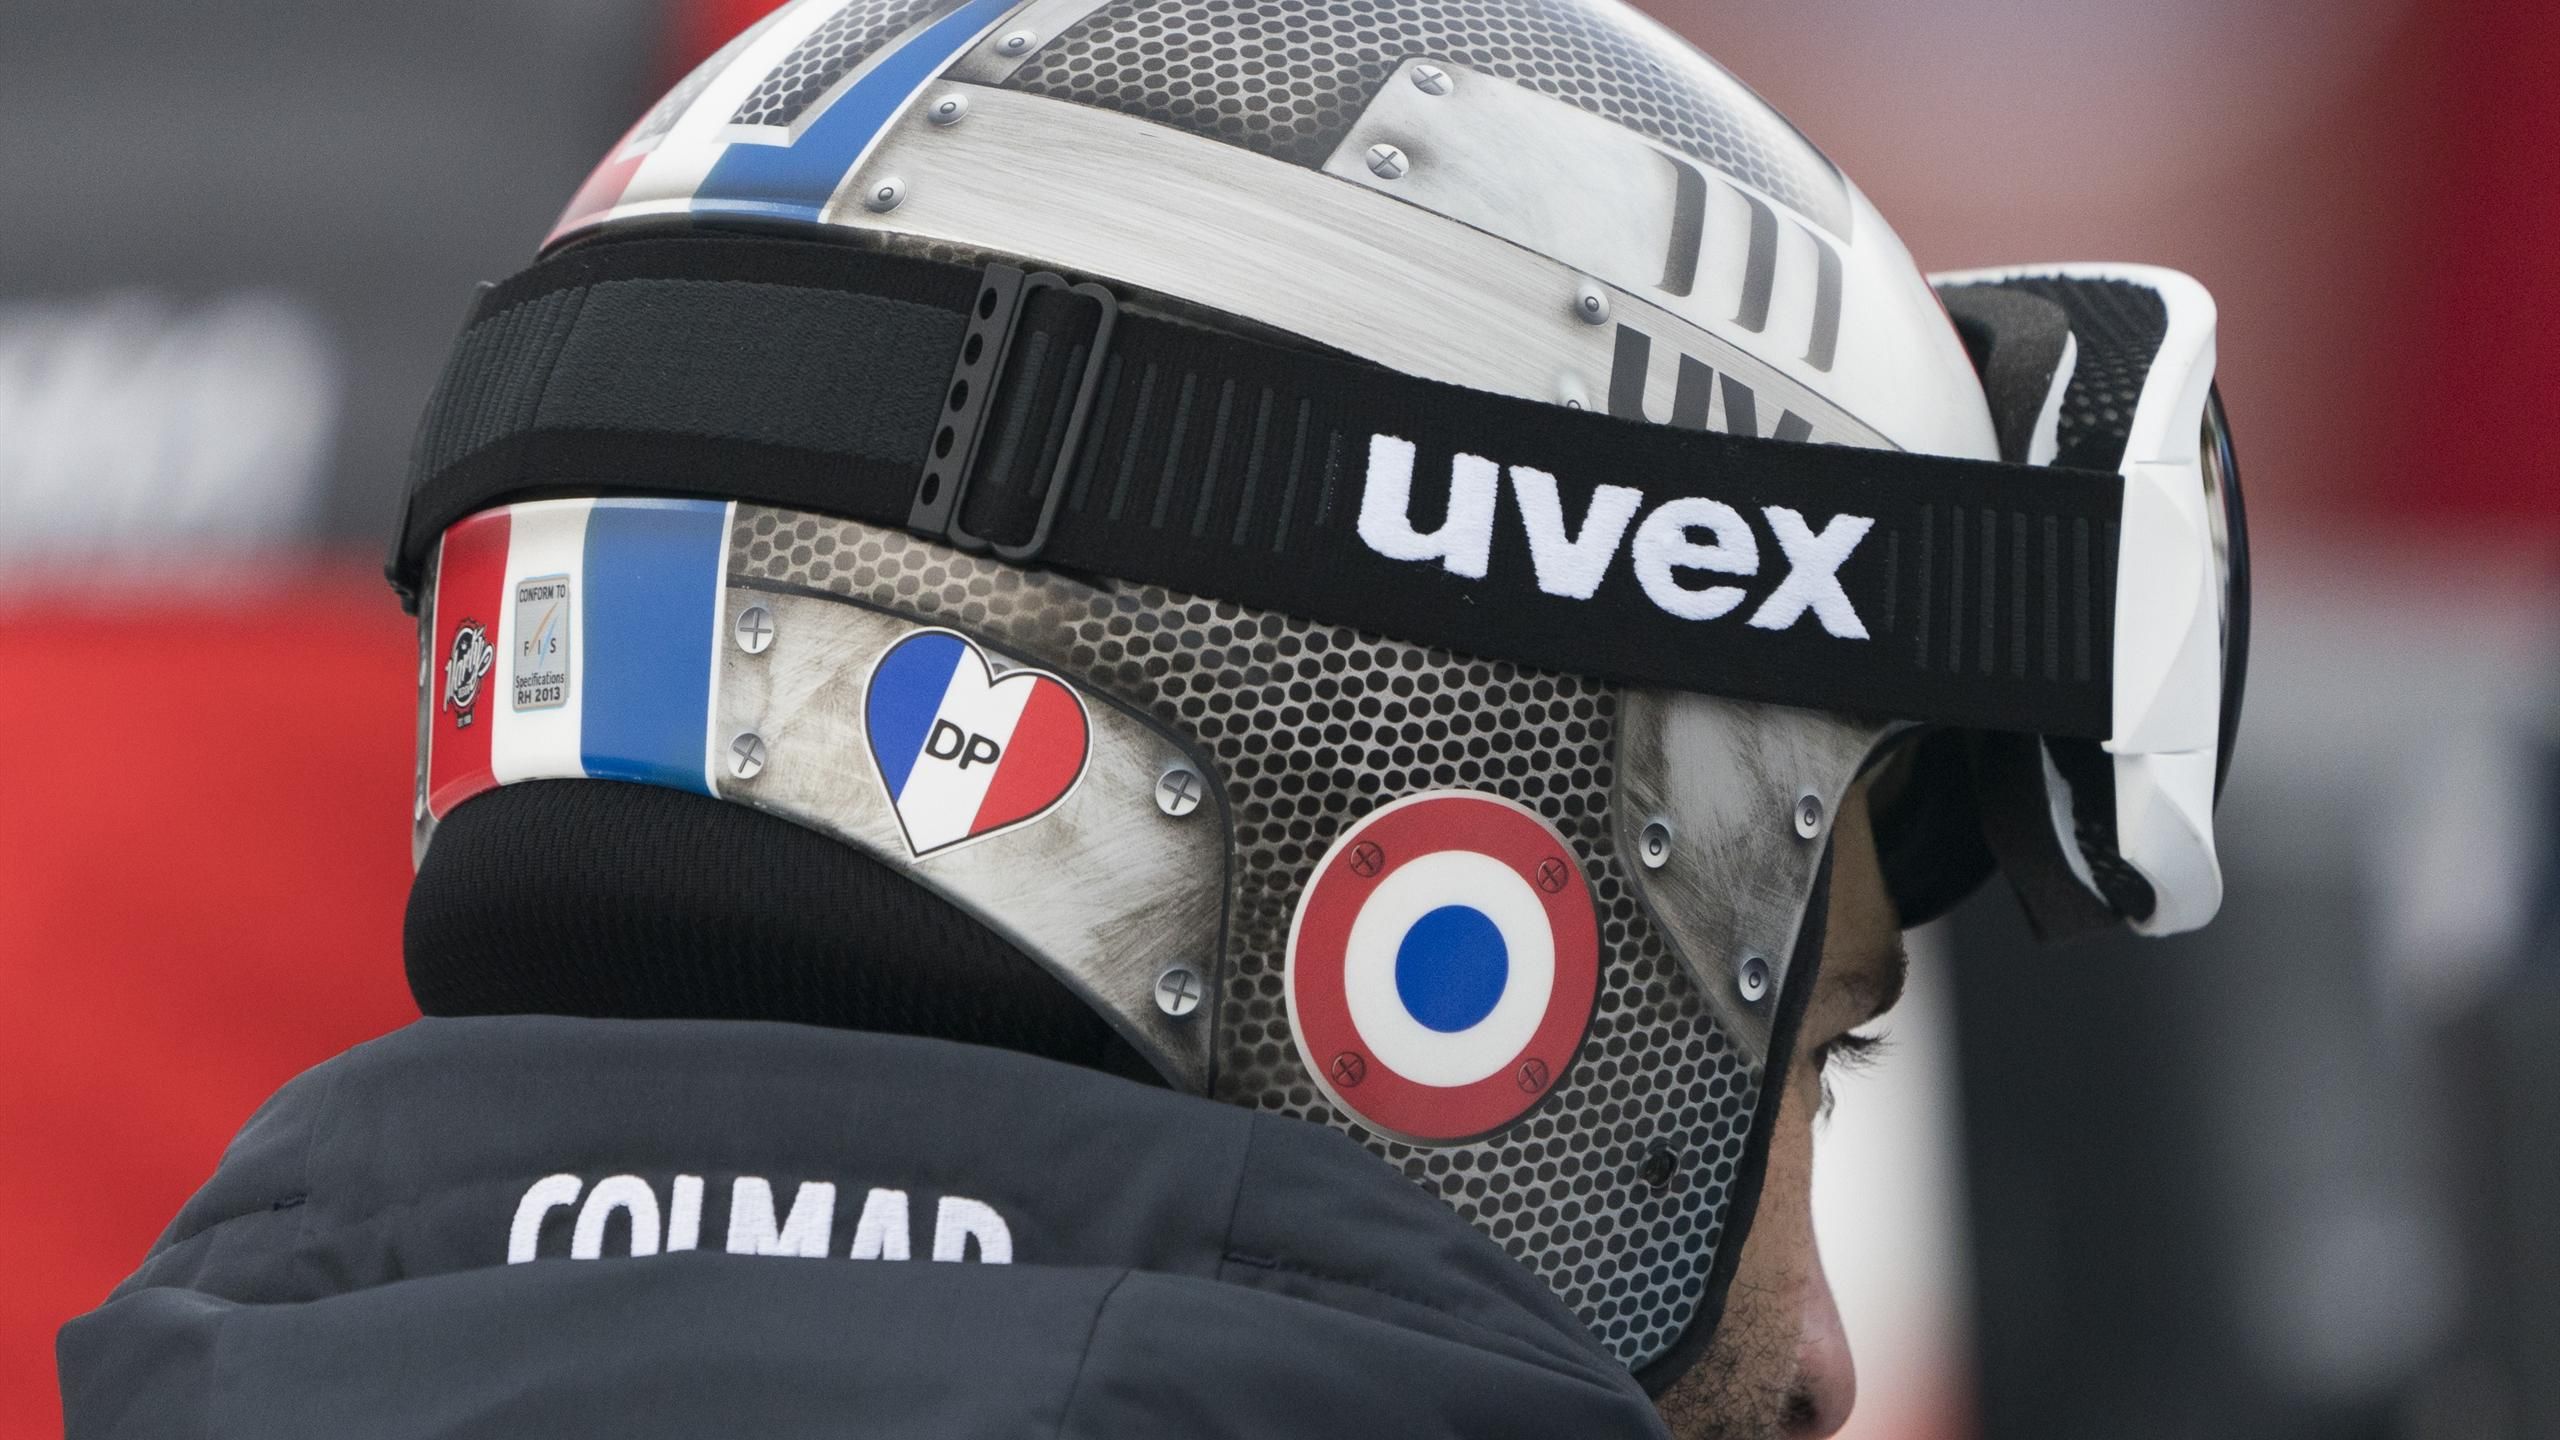 Le CIO a refusé que les skieurs français arborent un autocollant en hommage  à David Poisson - Eurosport